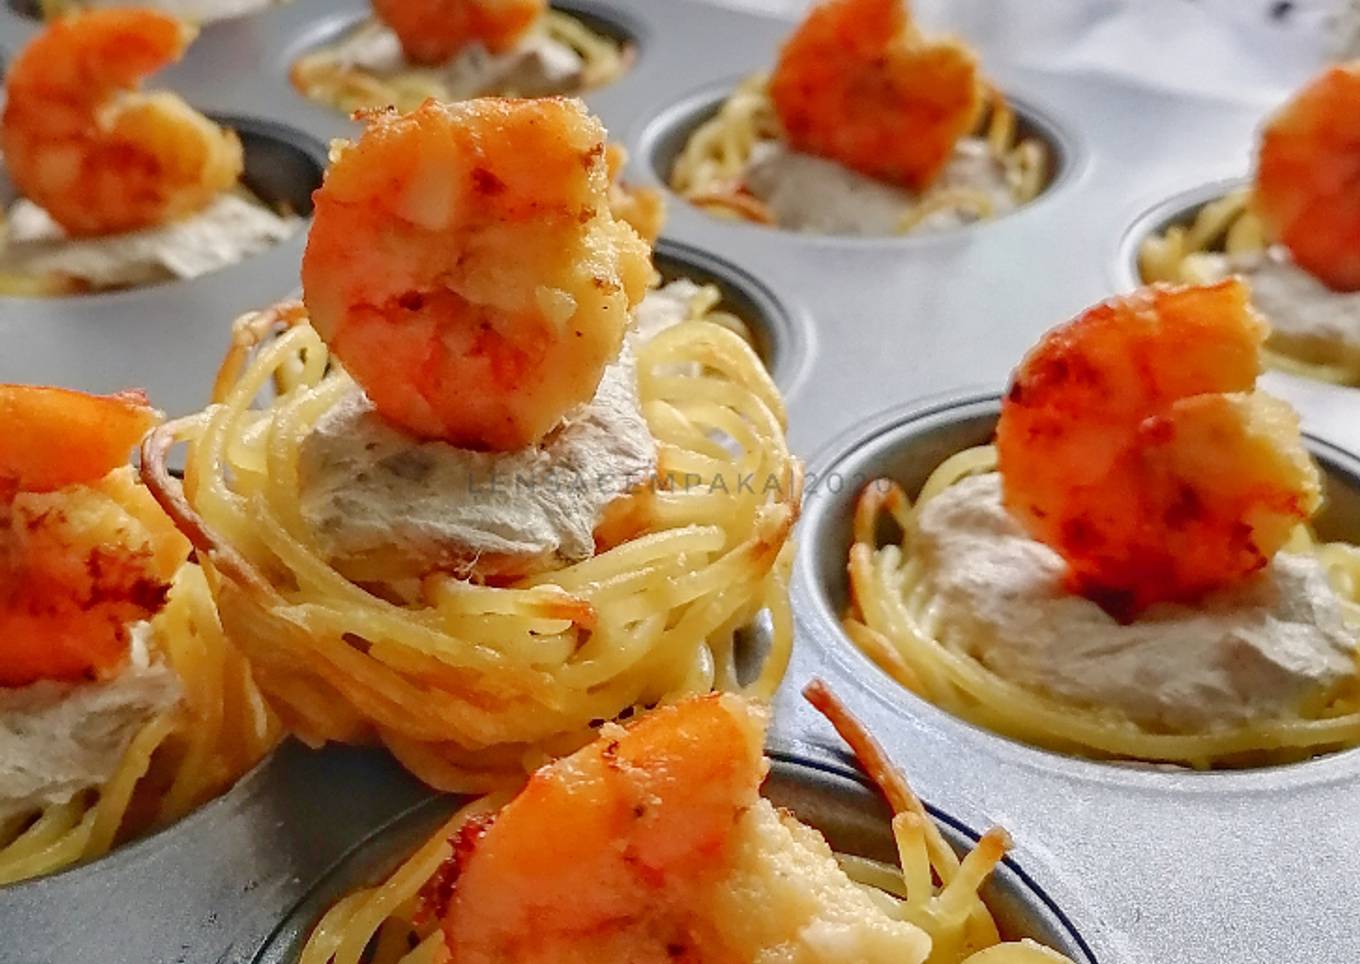 Spaghetti Tuna Cups with Prawn